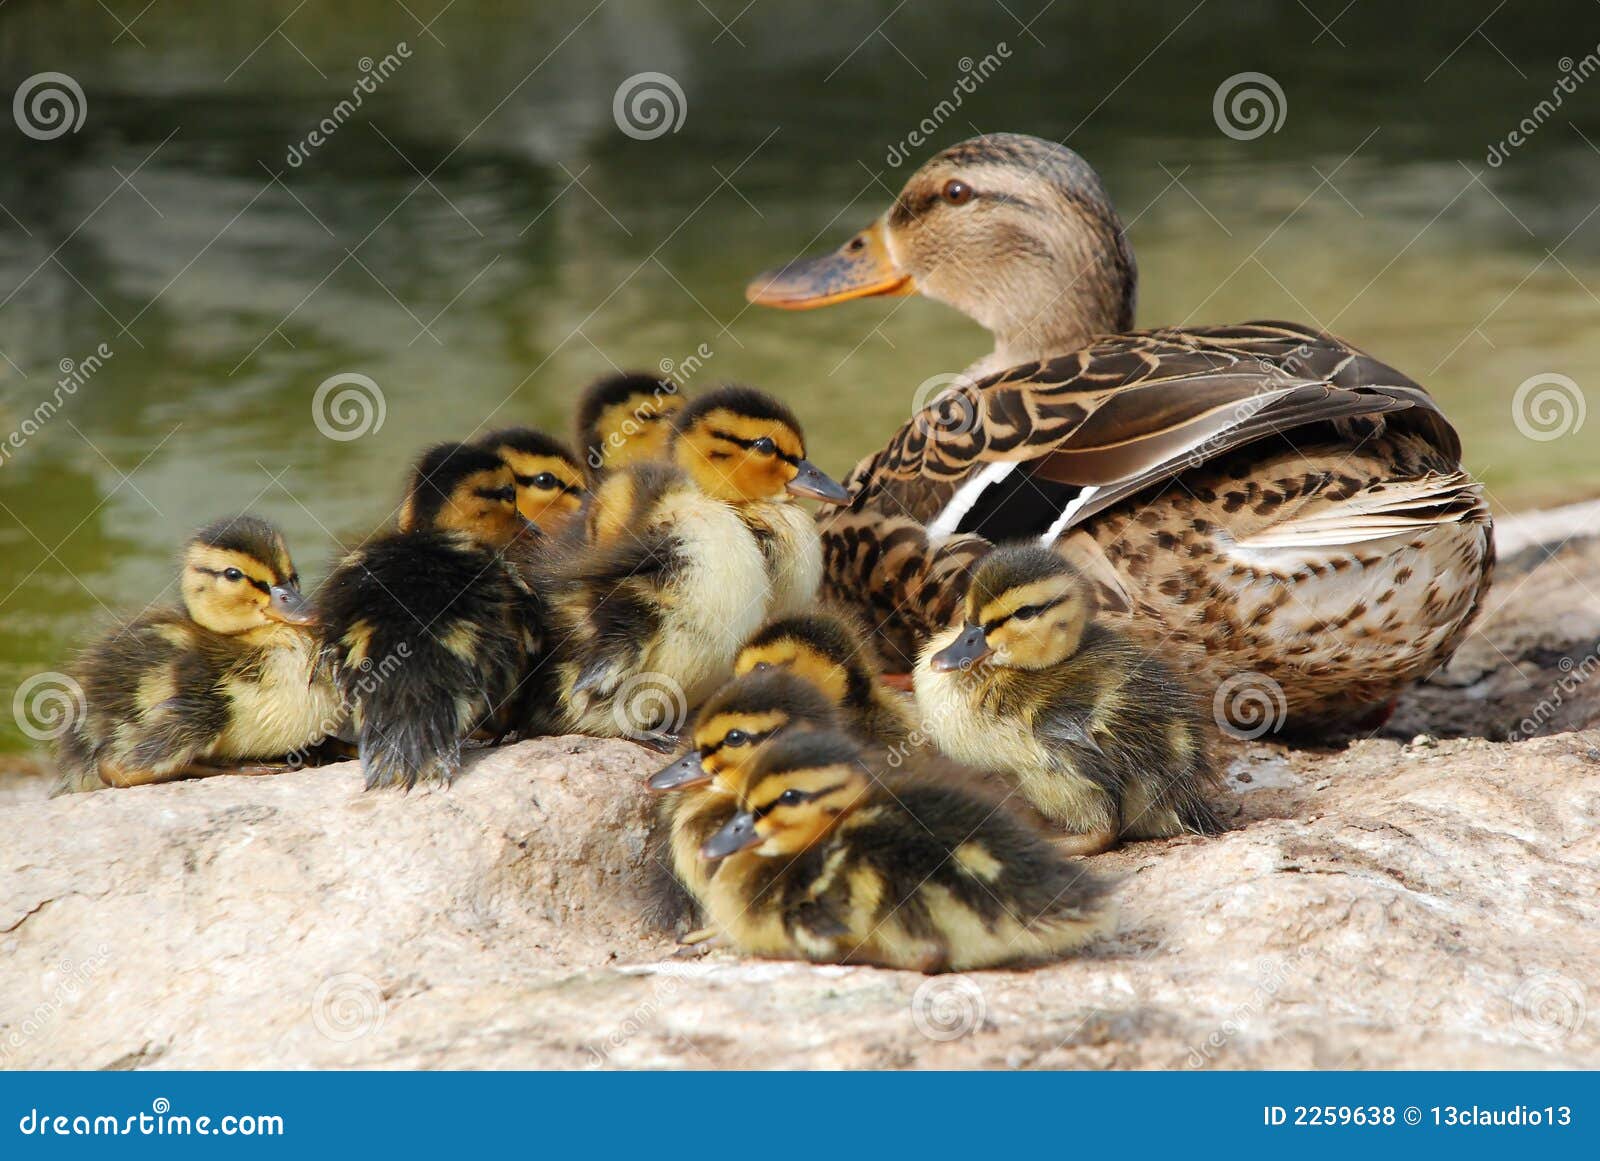 mama duck with ten baby ducks